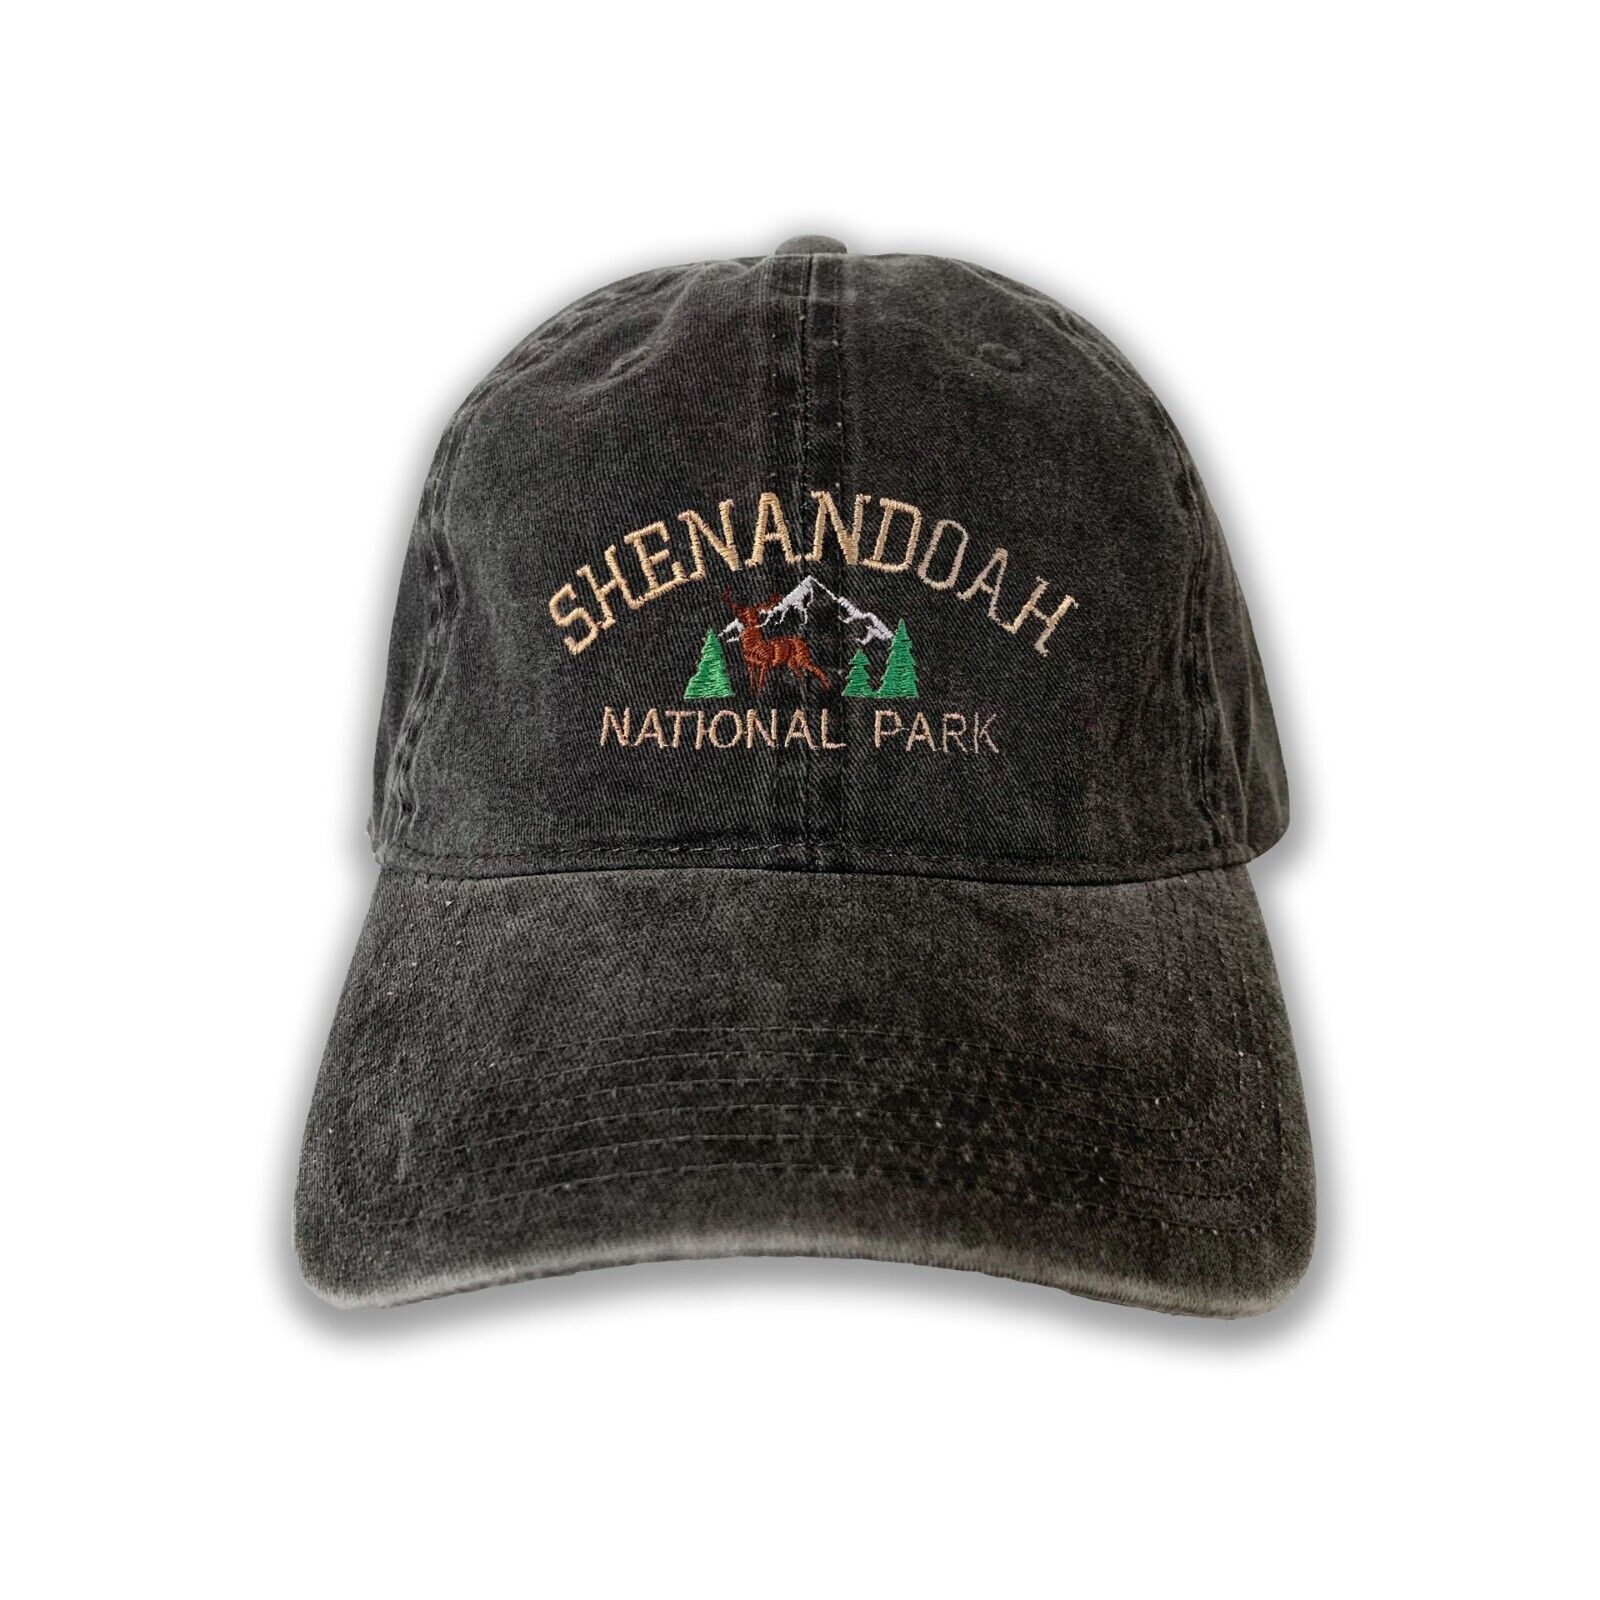 Shenandoah National Park Embroidered Cap hat baseball hat nature hat park hat